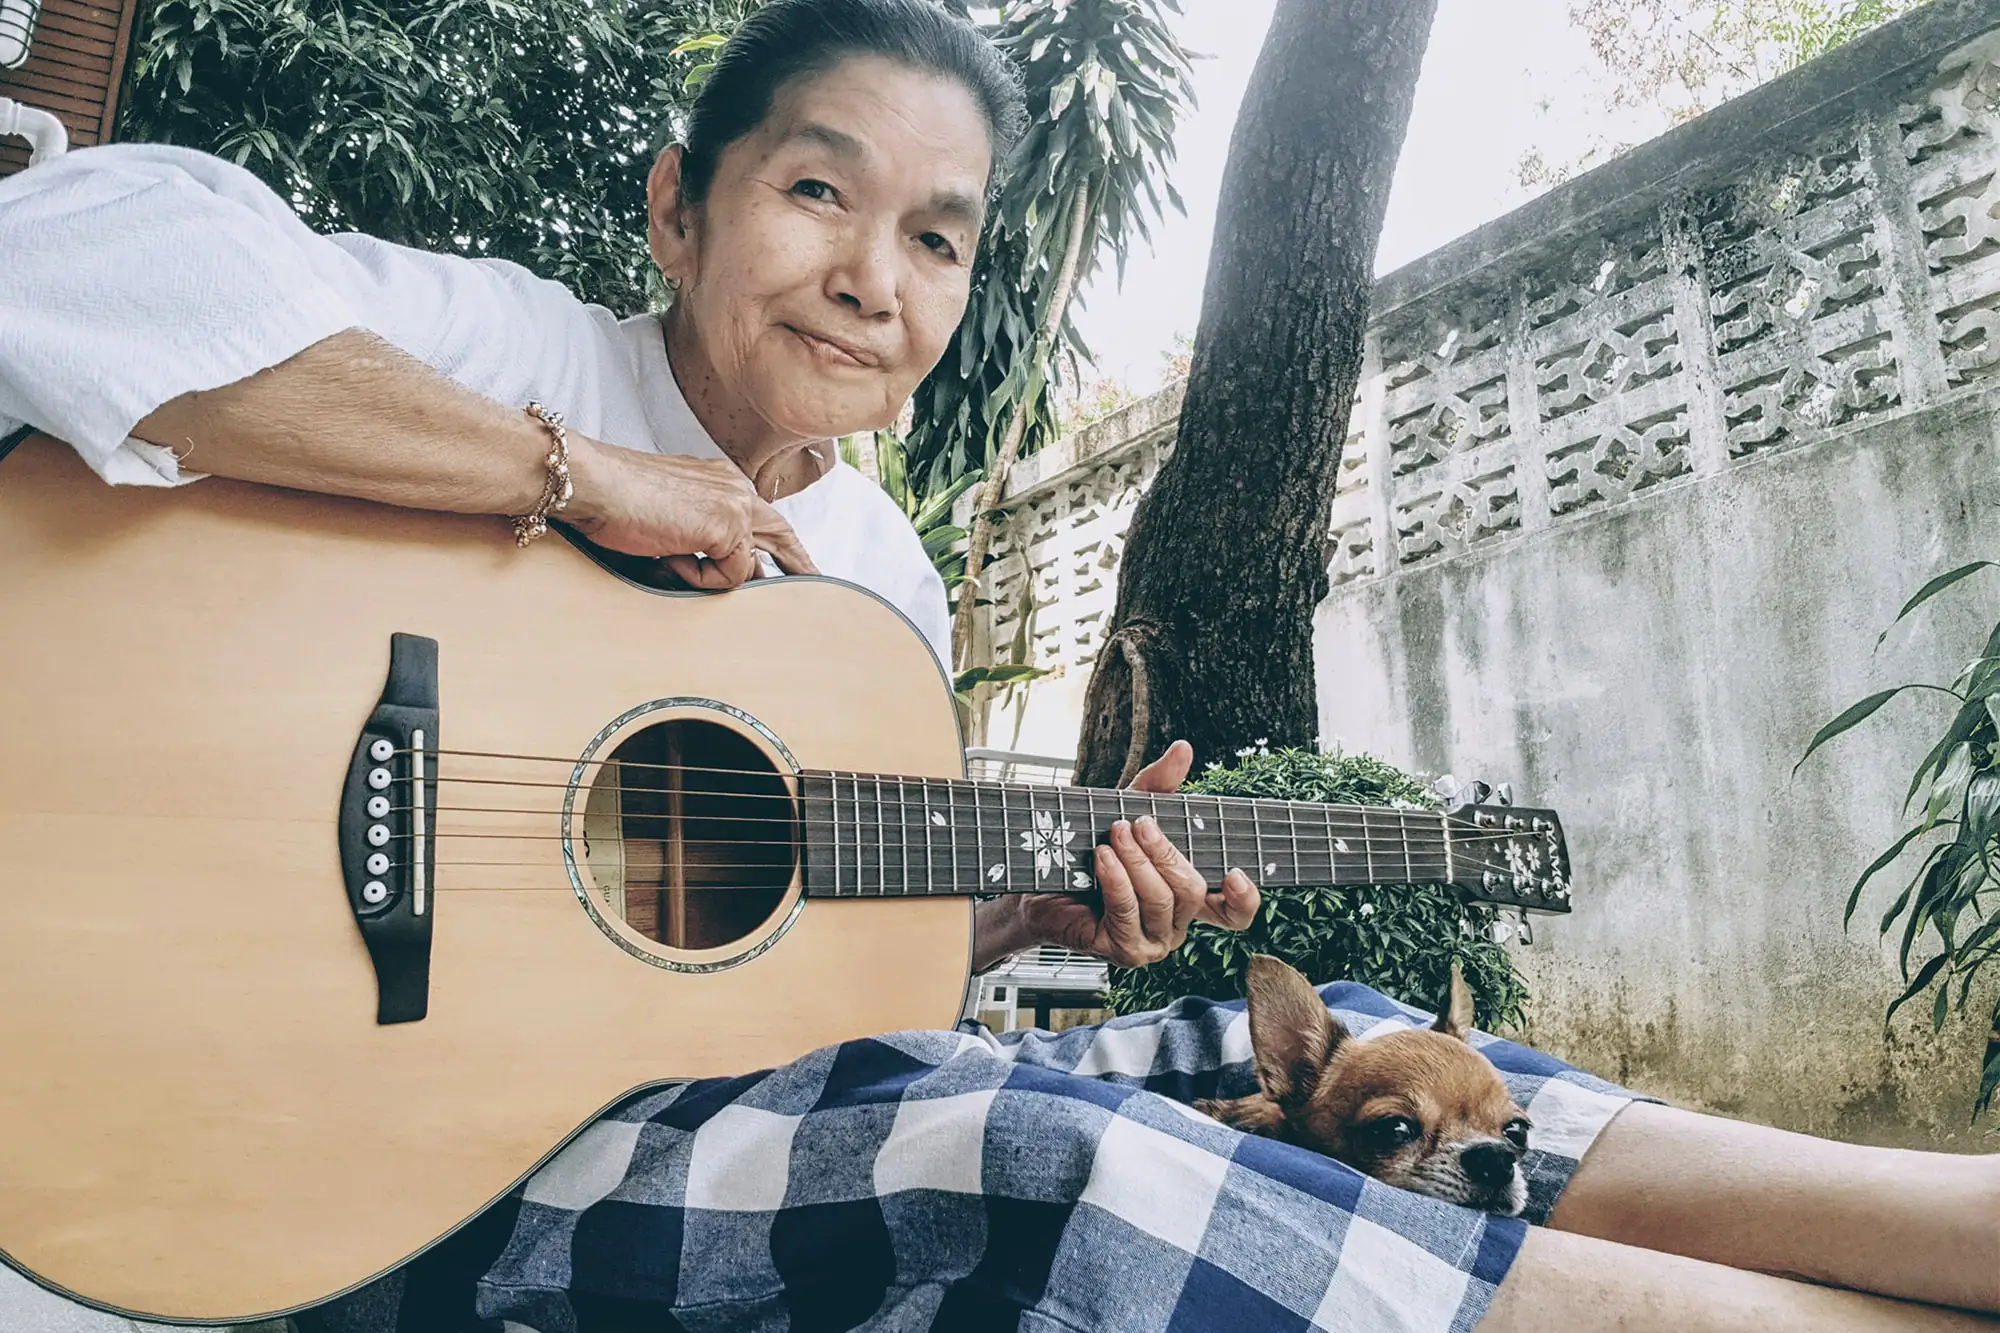 一把吉他，幾只小狗，泰國網紅瑪琳達奶奶的晚年生活太療癒了！（圖片來源：FB@หญิงชรา กะ หมาน้อย）